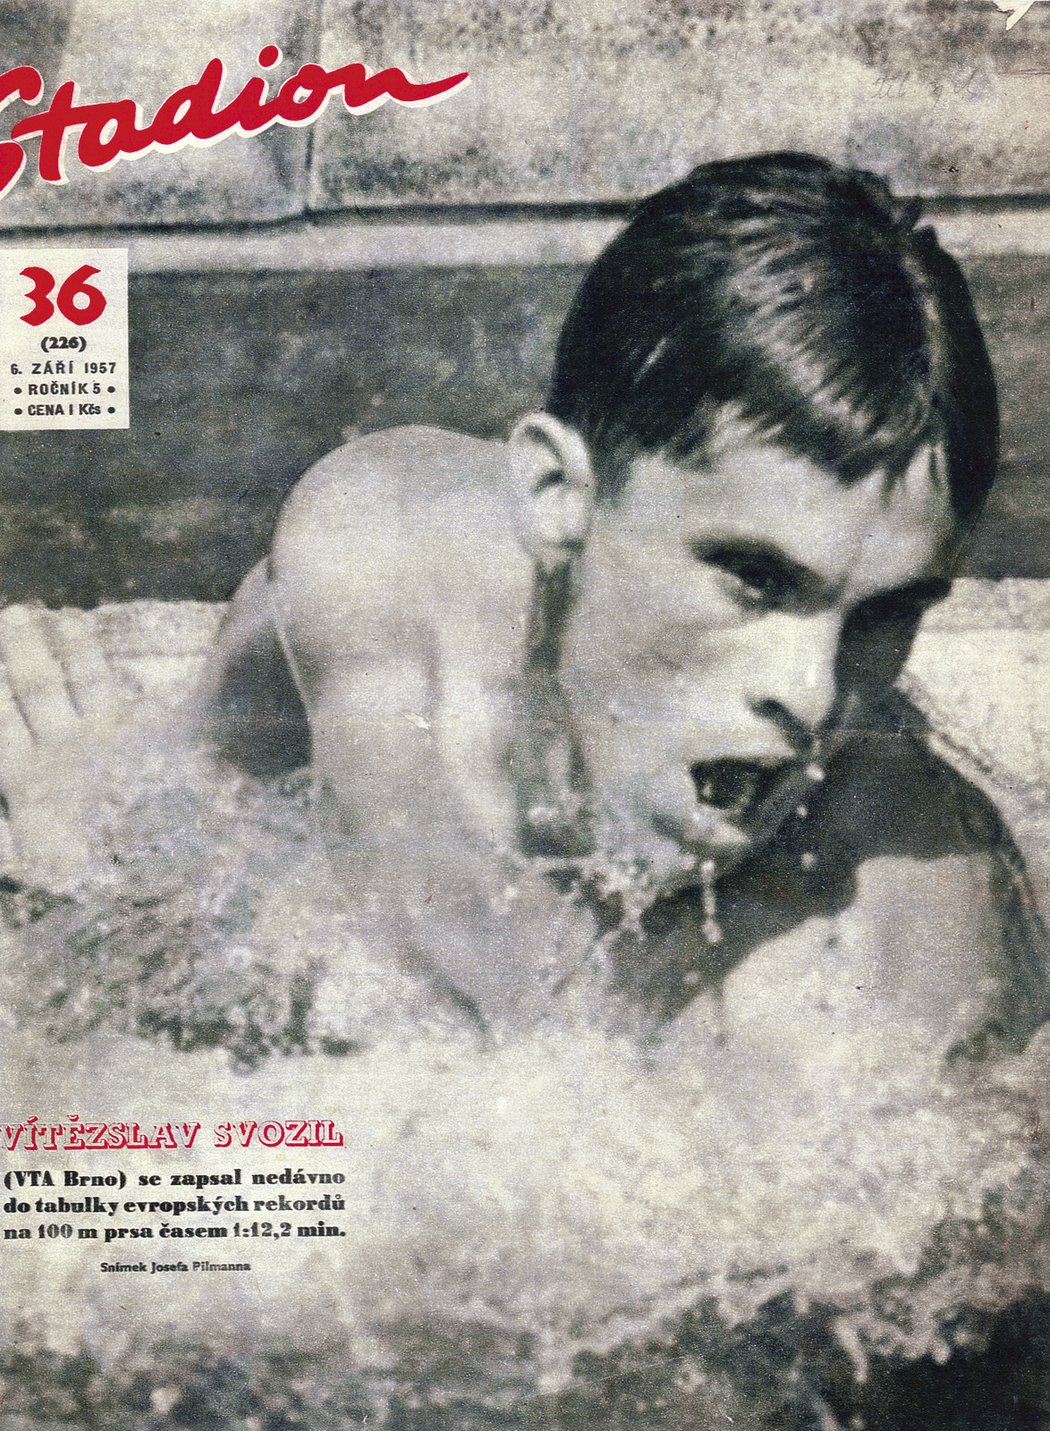 Vítězslav Svozil na obálce časopisu Stadion